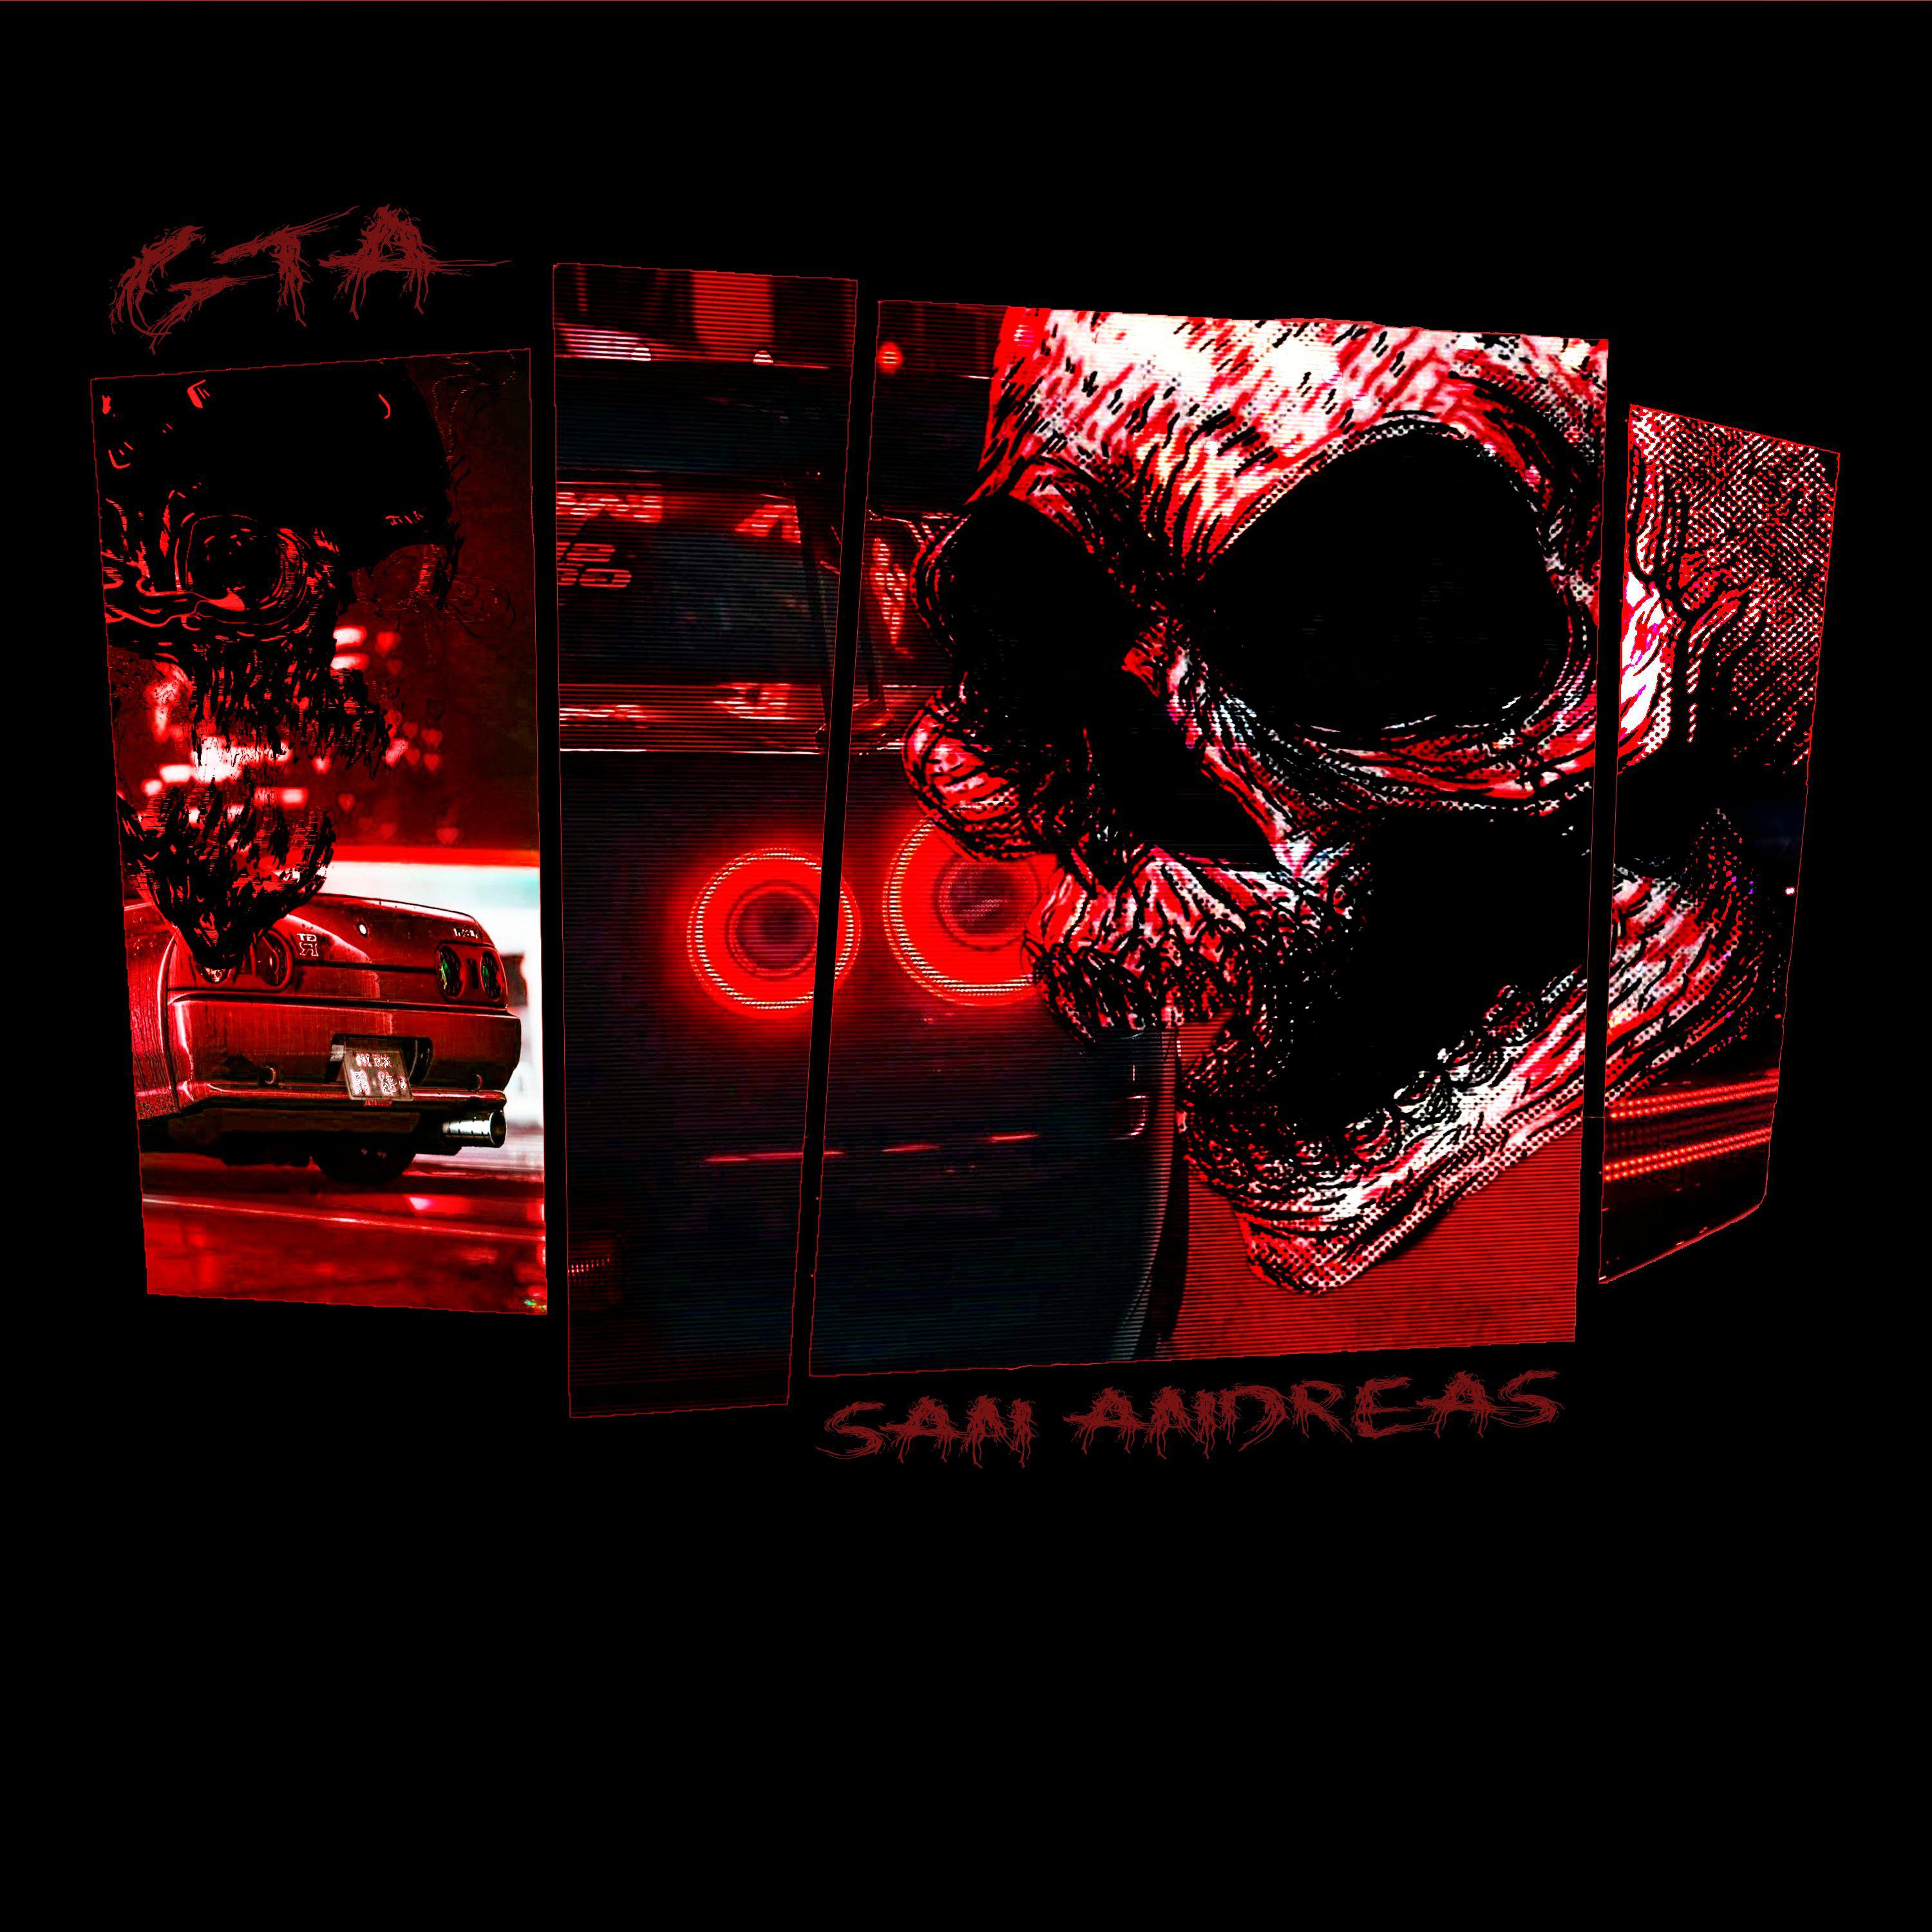 Постер альбома GTA SAN ANDREAS